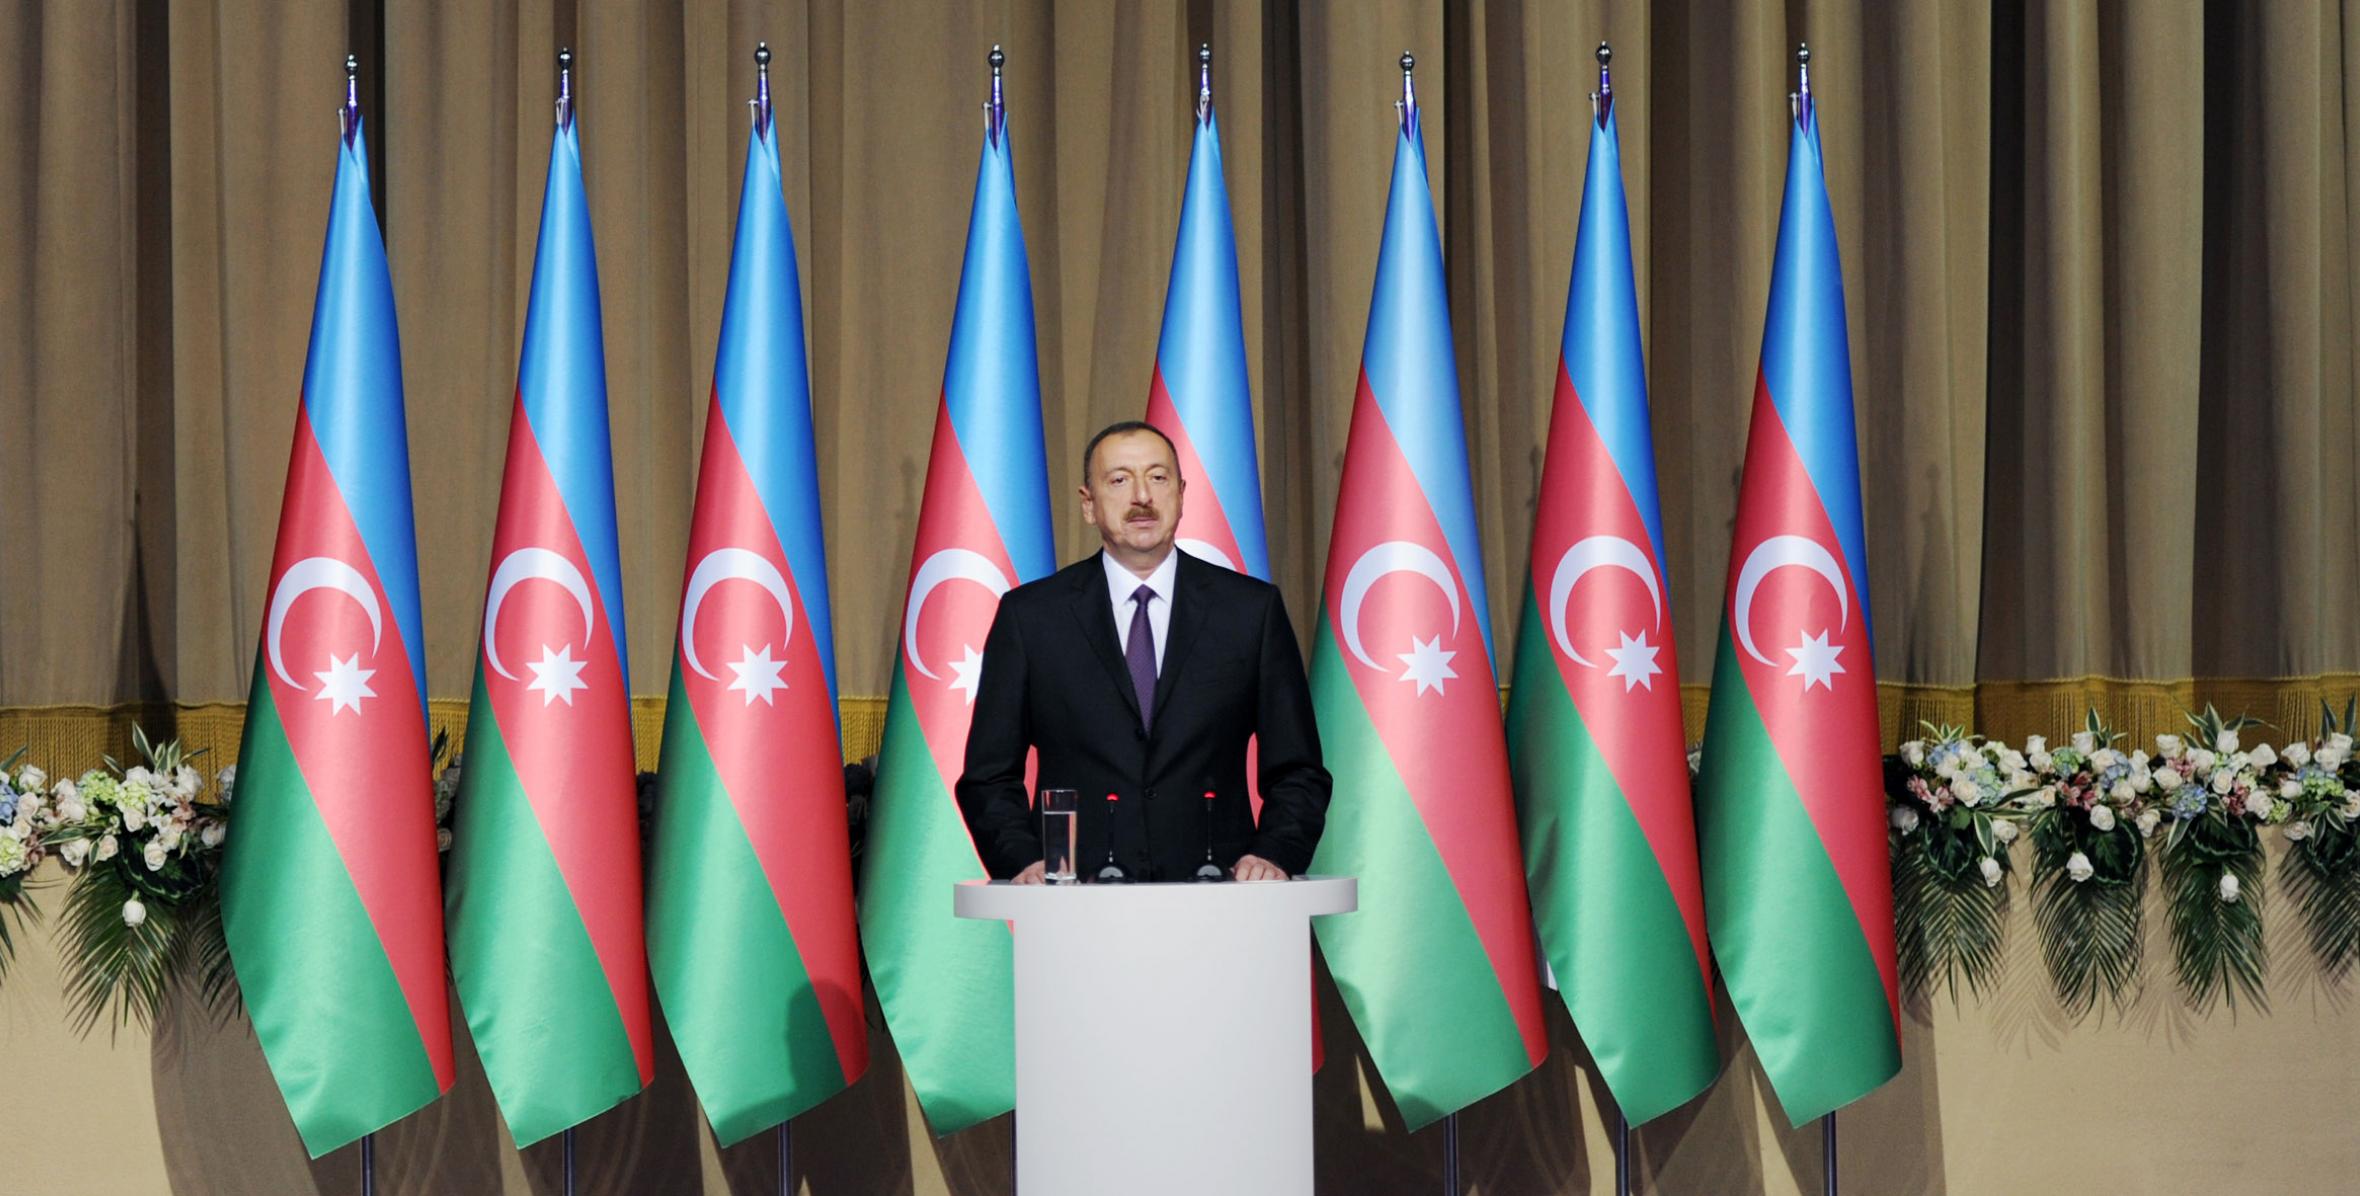 Ильхам Алиев принял участие в официальном приеме по случаю национального праздника Азербайджана – Дня республики